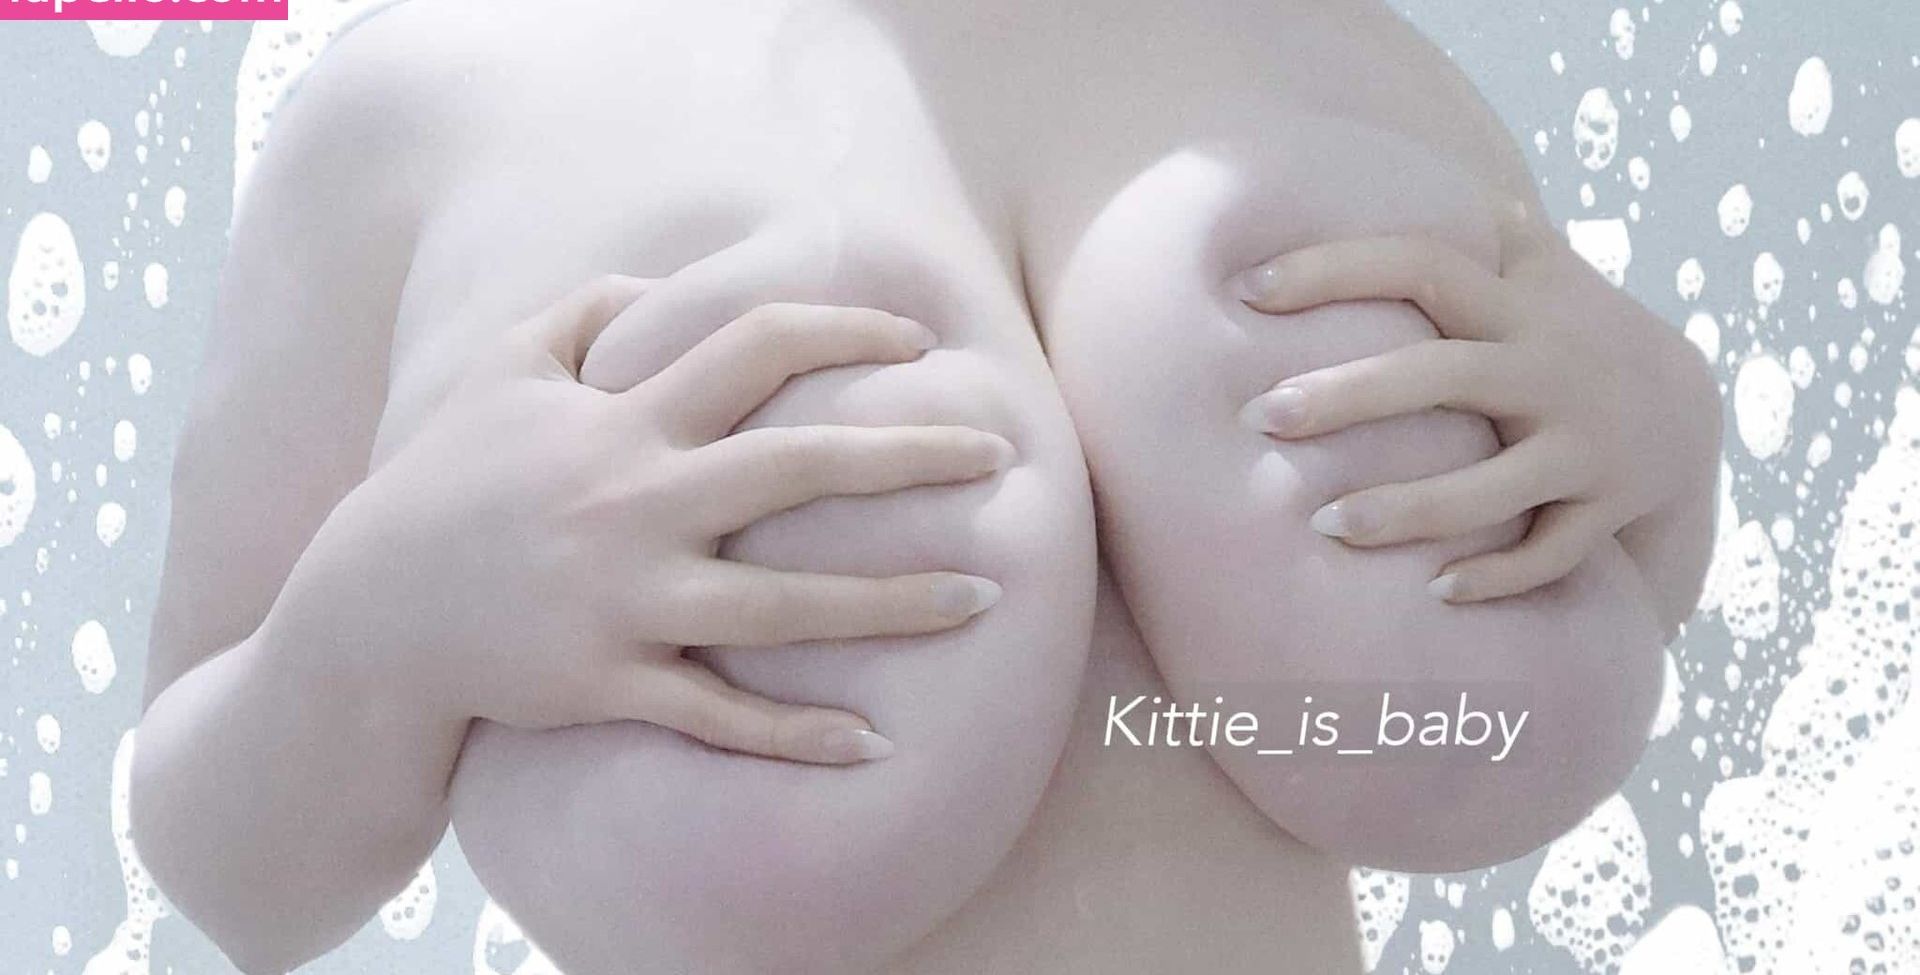 Kittie_is_baby nude #108095760